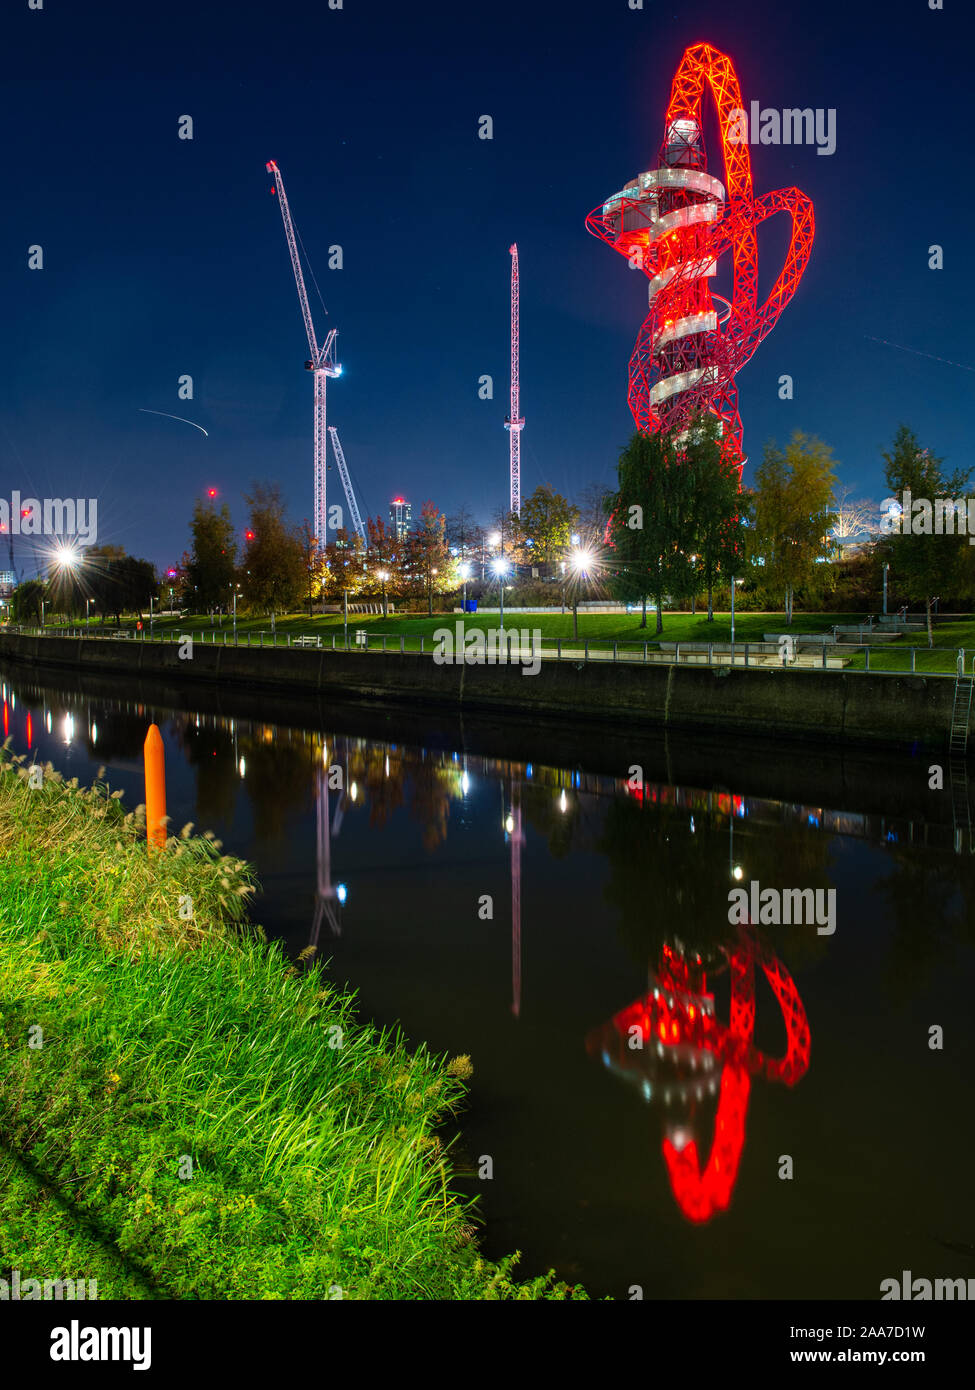 Londres, Angleterre, Royaume-Uni - 7 novembre 2019 : La tour d'observation d'ArcelorMittal Orbit se reflète dans l'eau, de la rivière Lea à Lond Banque D'Images